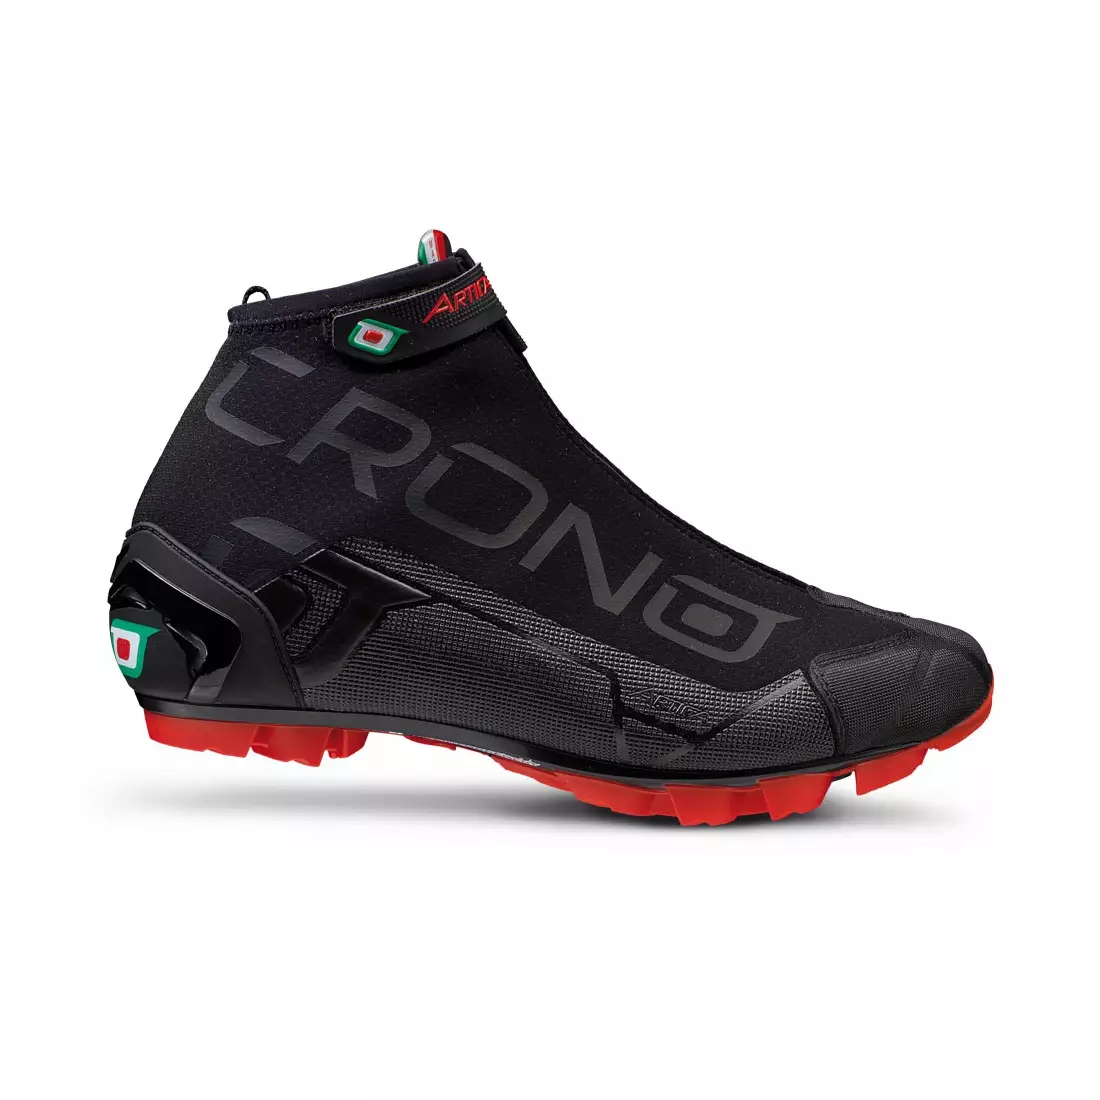 CRONO ARTICA MTB - pantofi de iarnă pentru ciclism MTB - ZAMEK - culoare: Negru